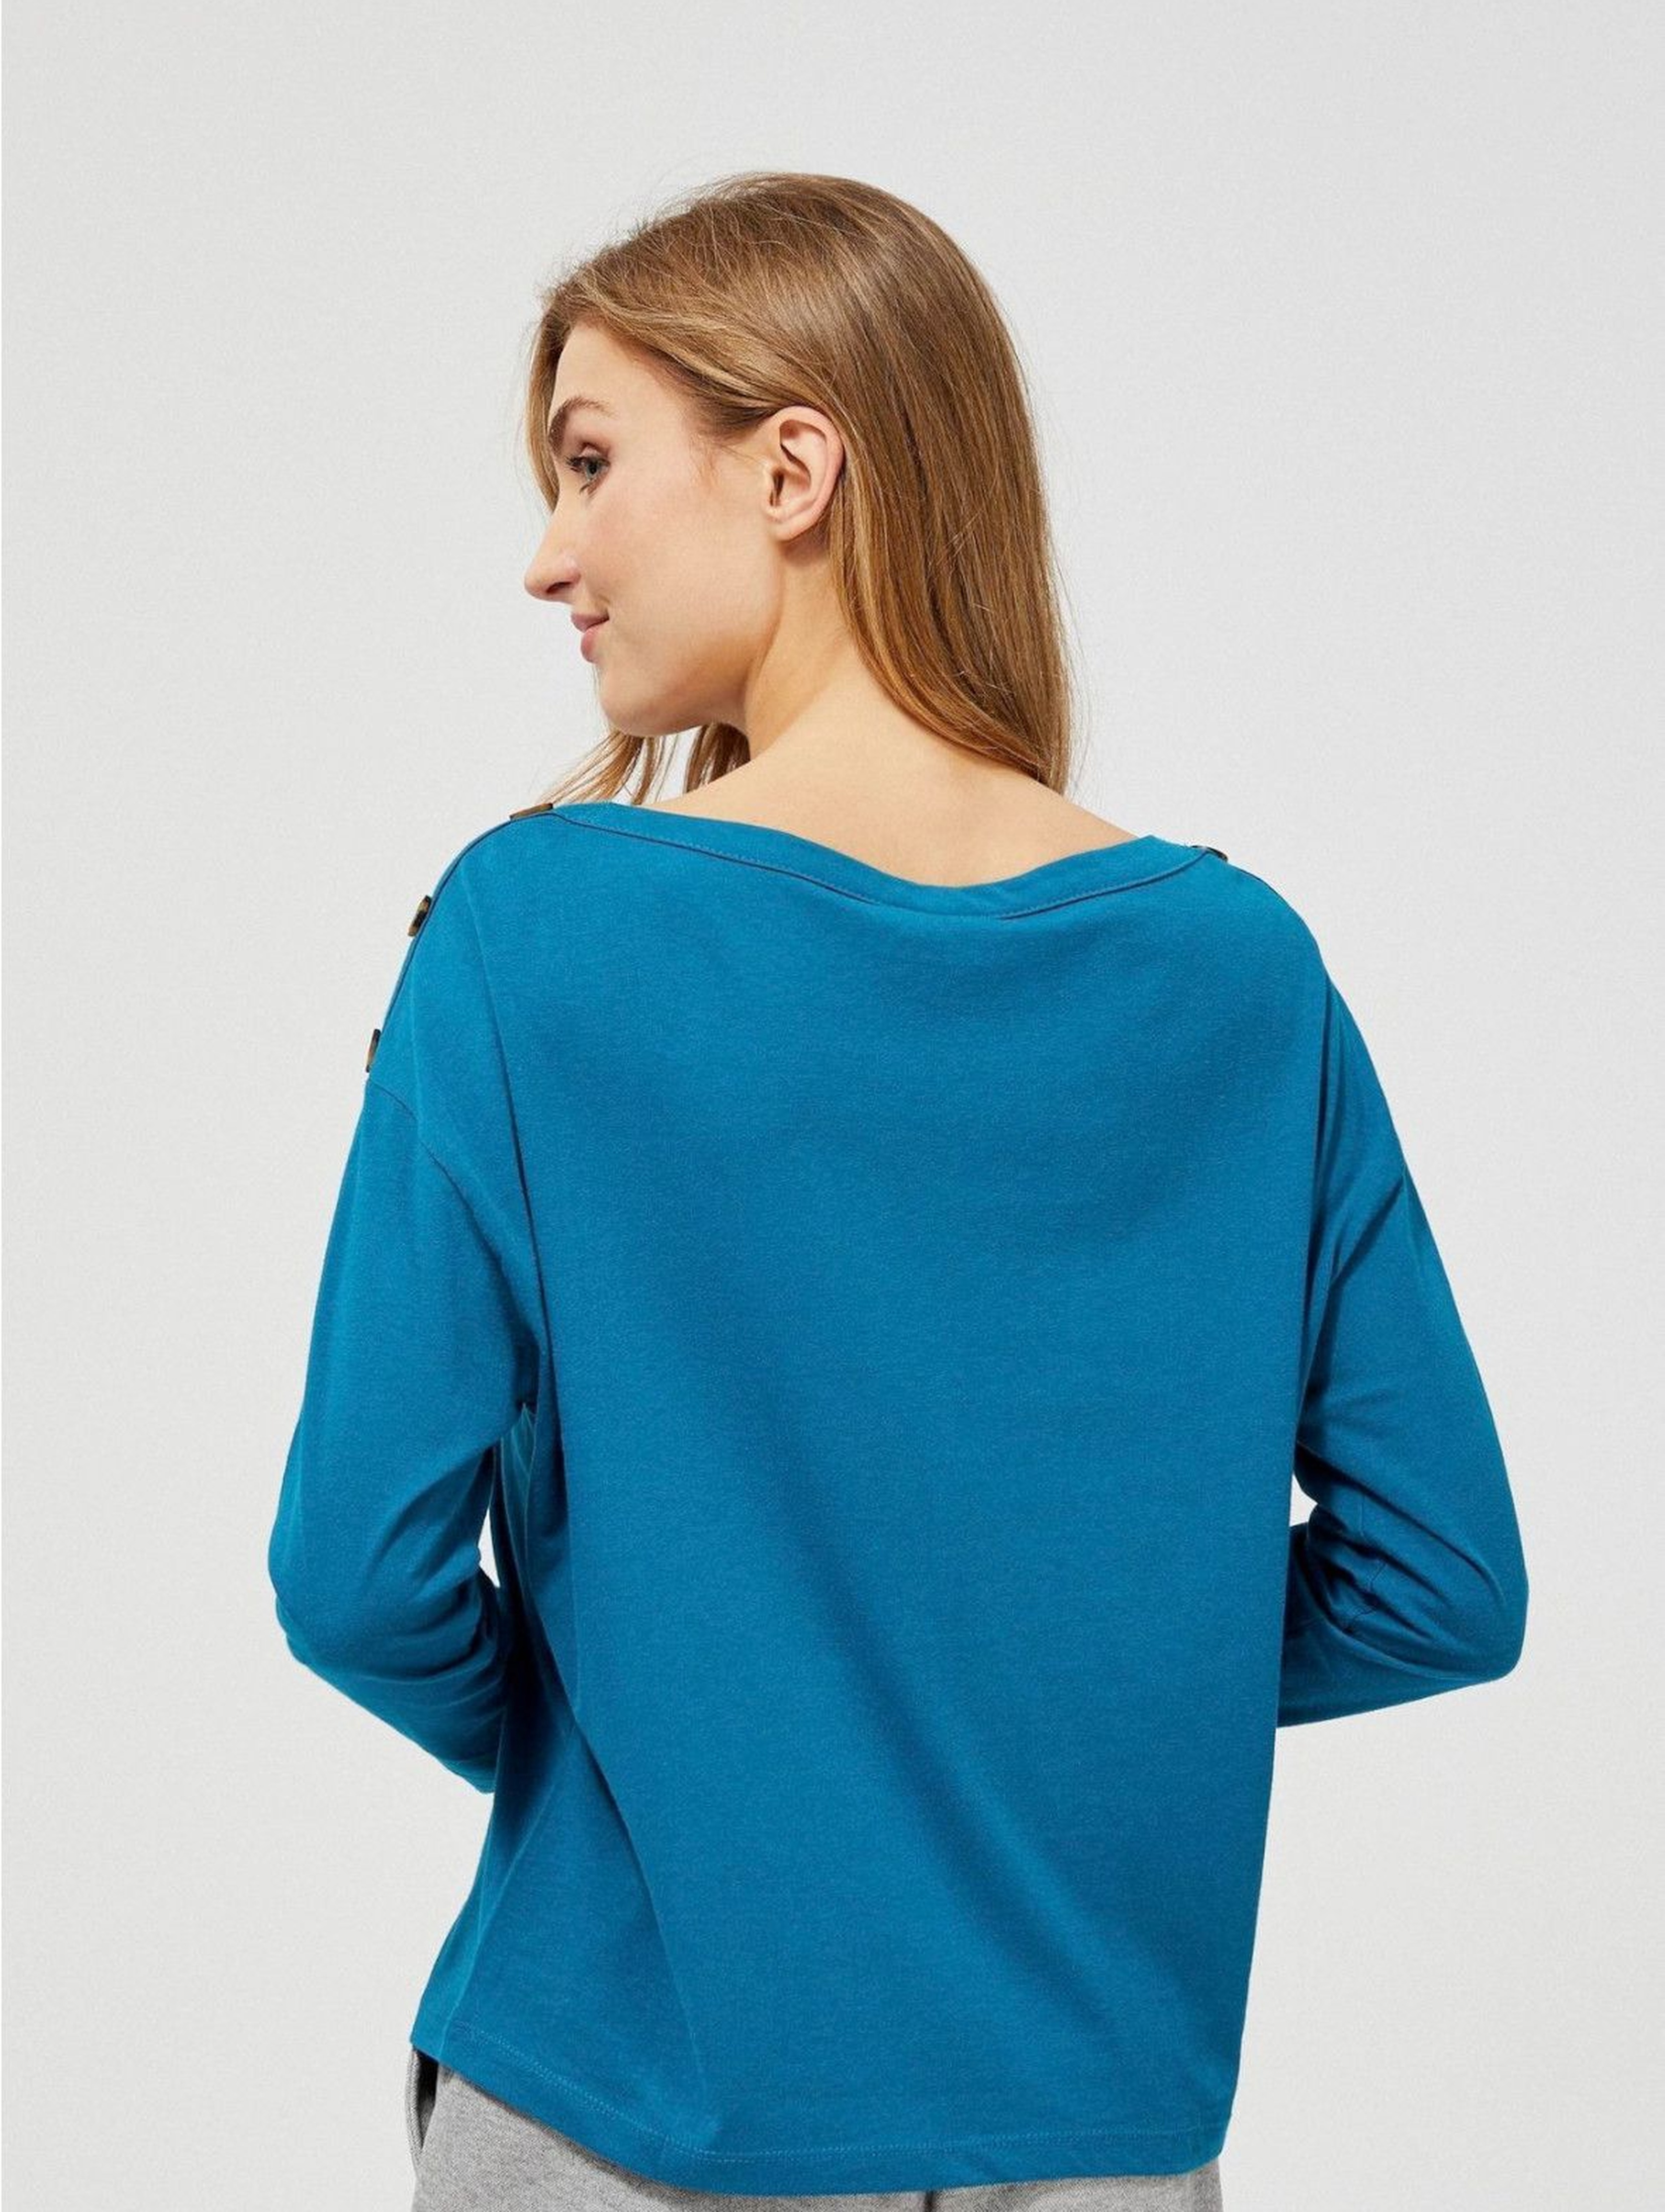 Niebieska bluzka damska z guzikami na ramionach